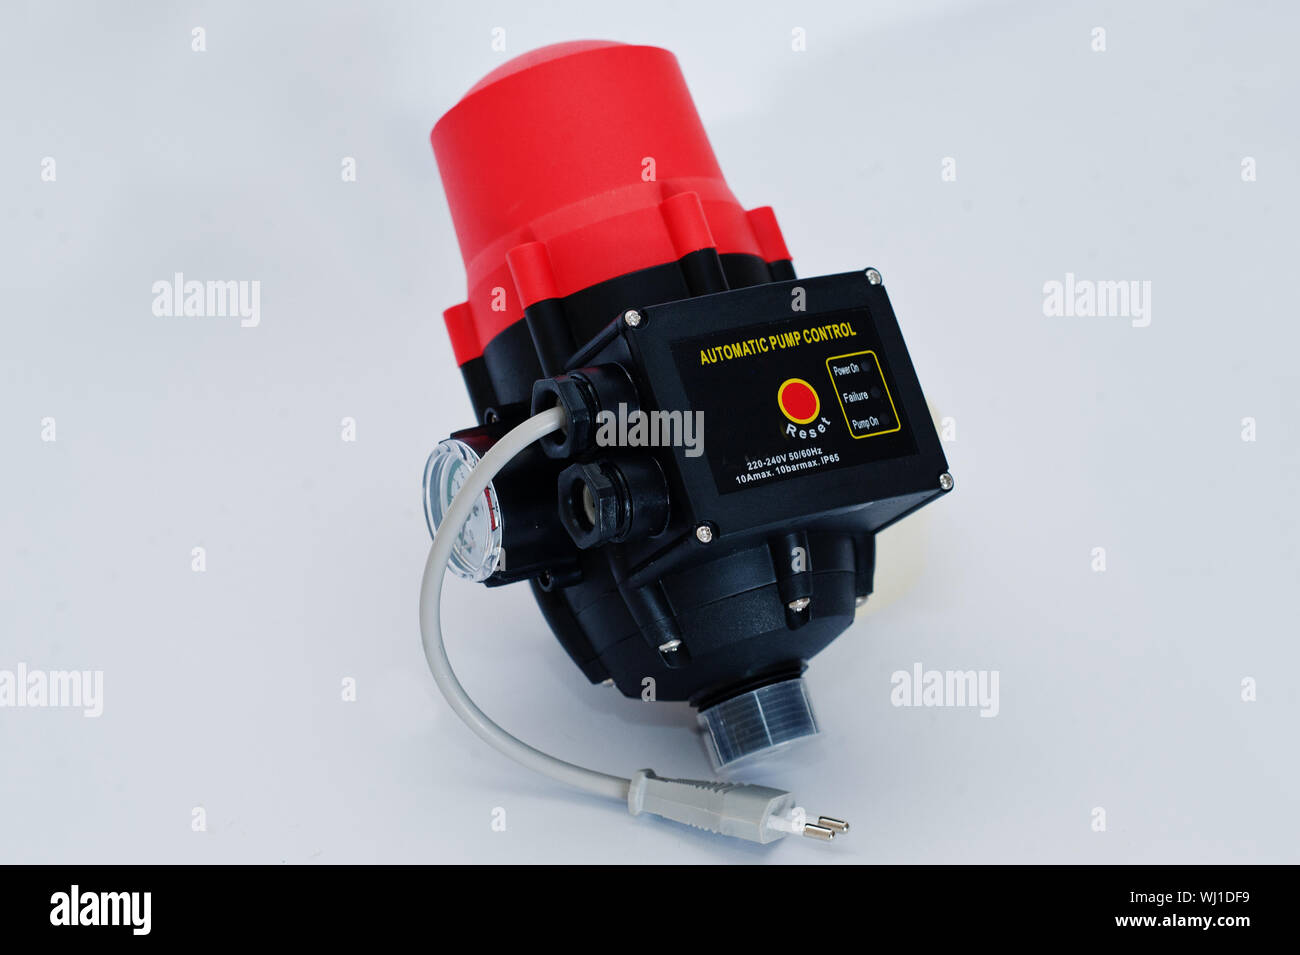 Automatische elektronische Steuerung Wasserpumpe Druckregler  Stockfotografie - Alamy